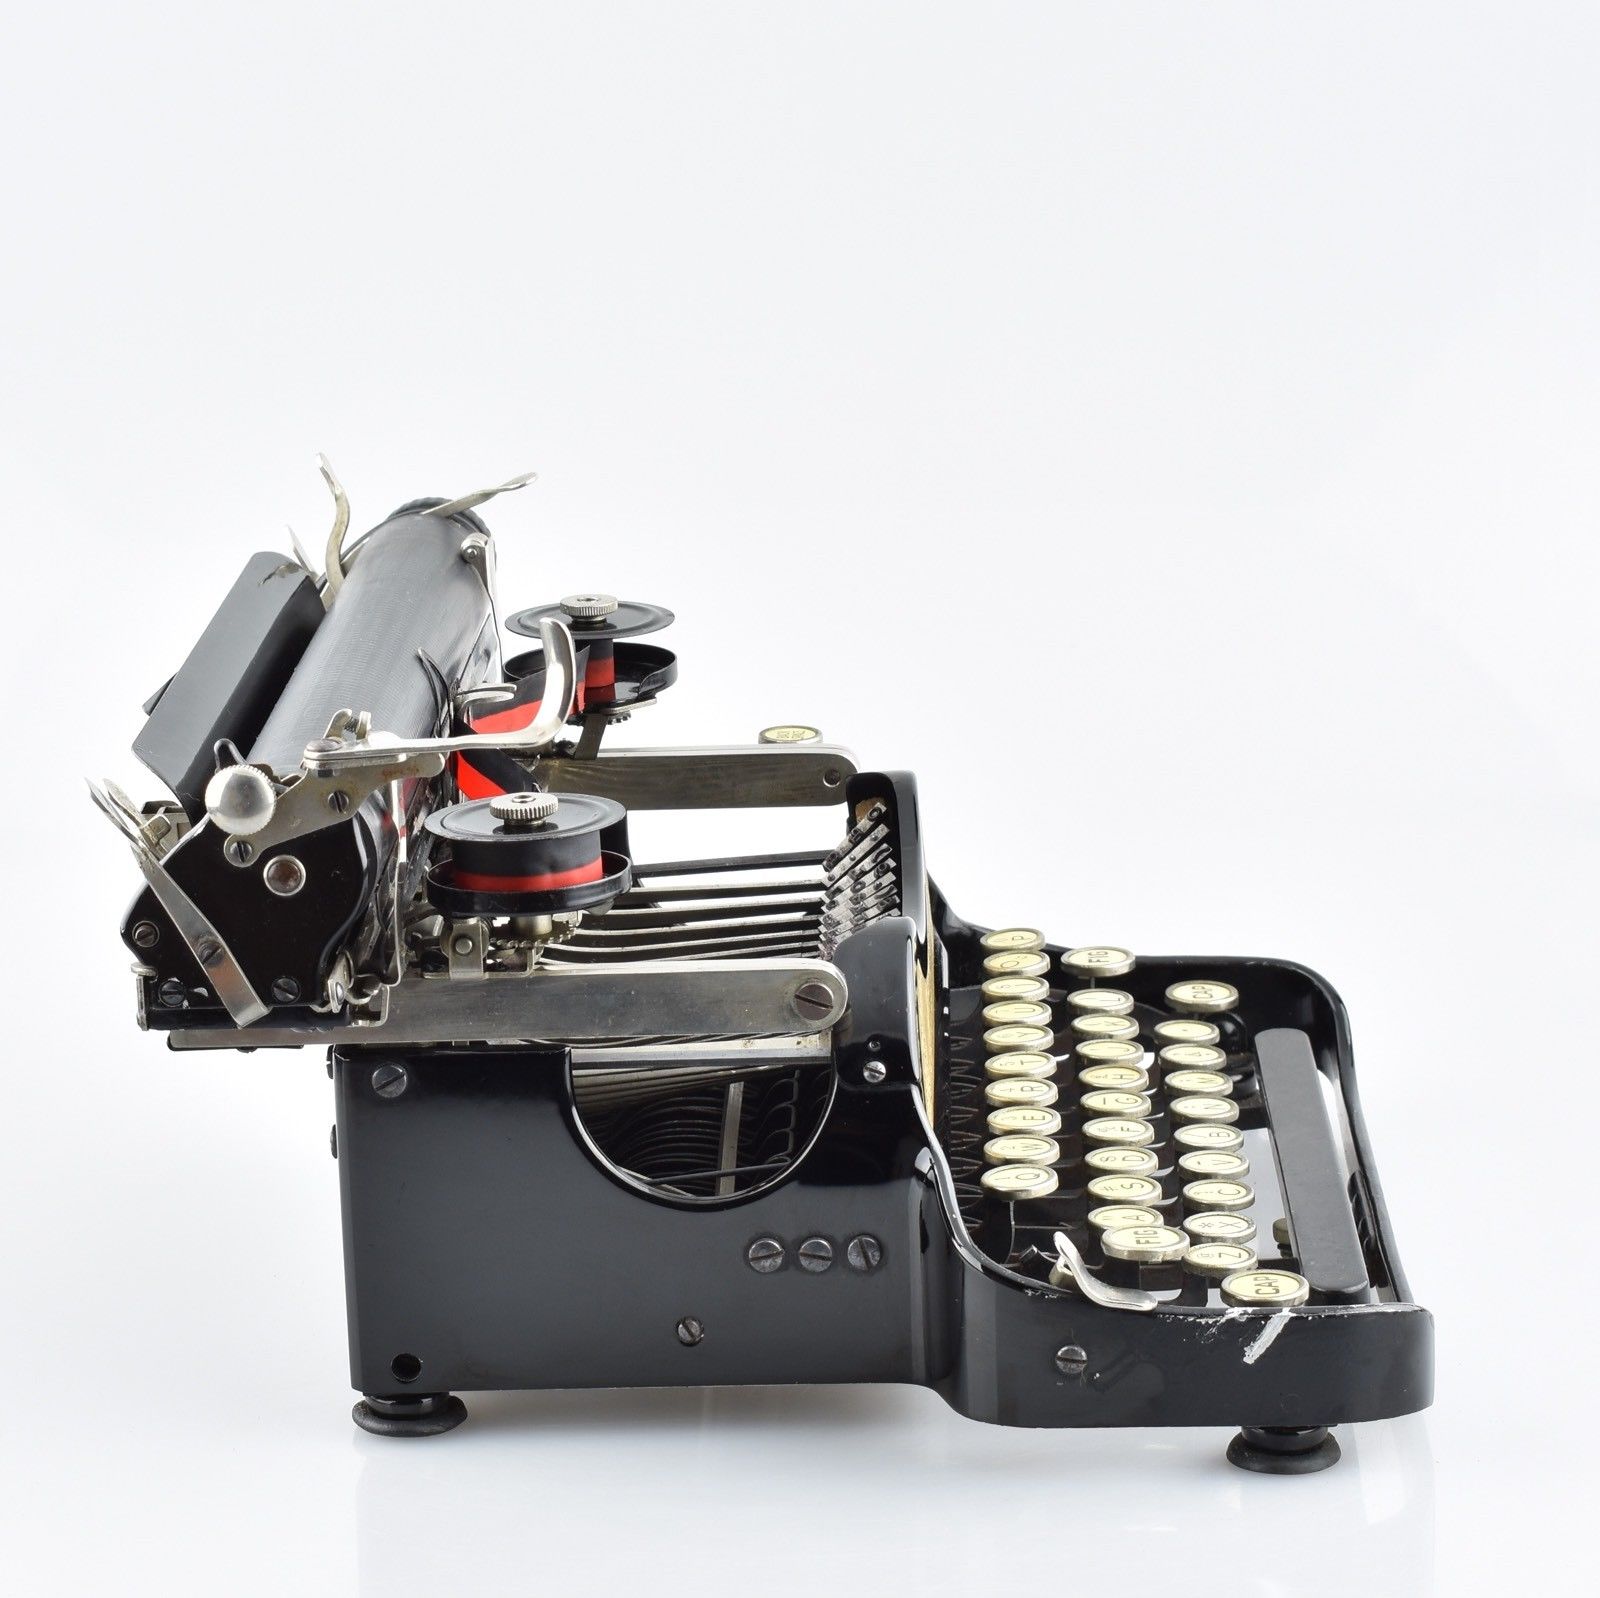 lc smith typewriter price